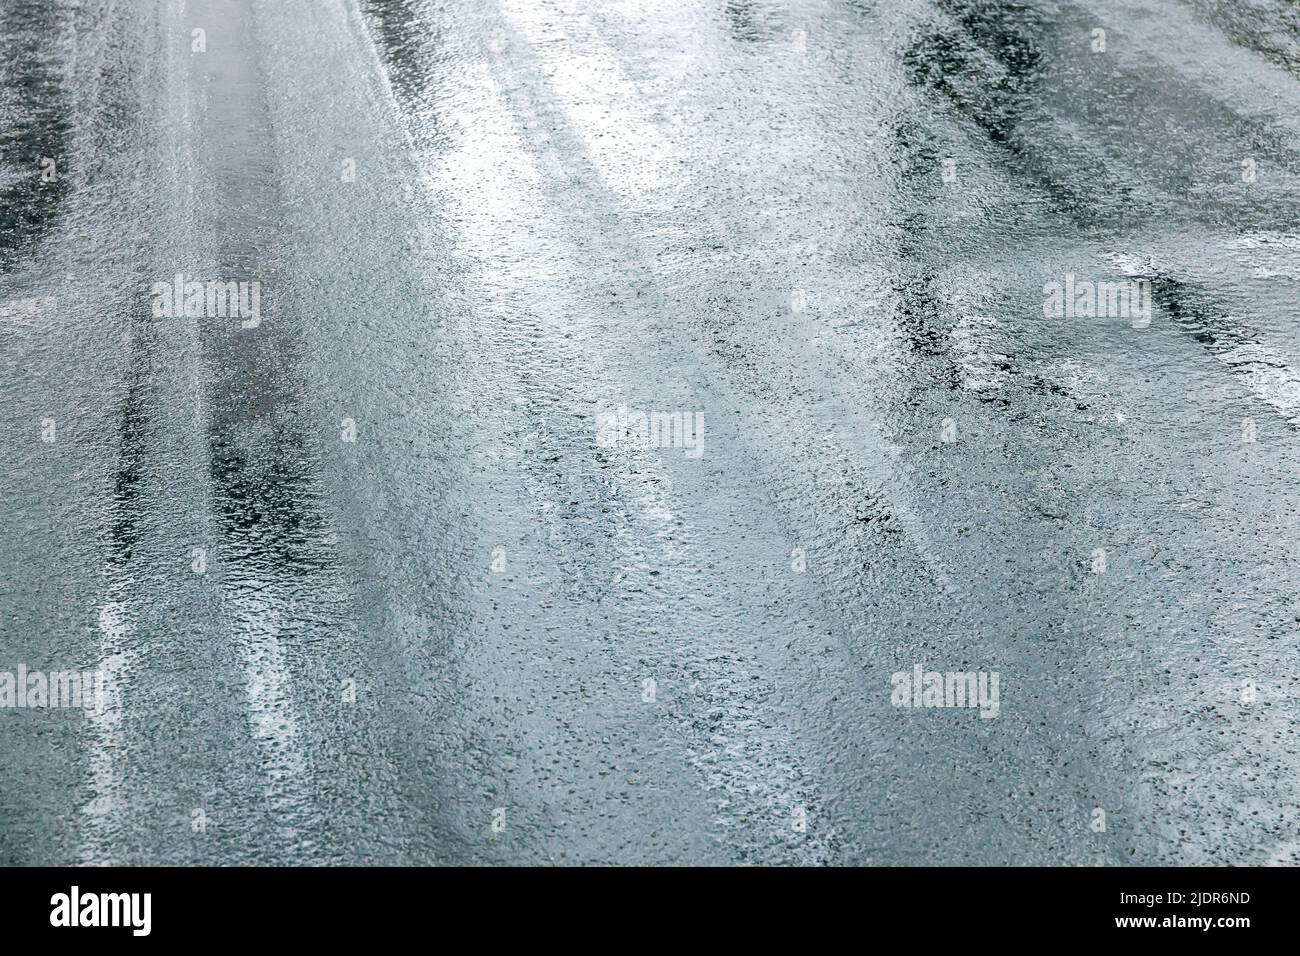 superficie de asfalto húmedo con reflejo del cielo Foto de stock